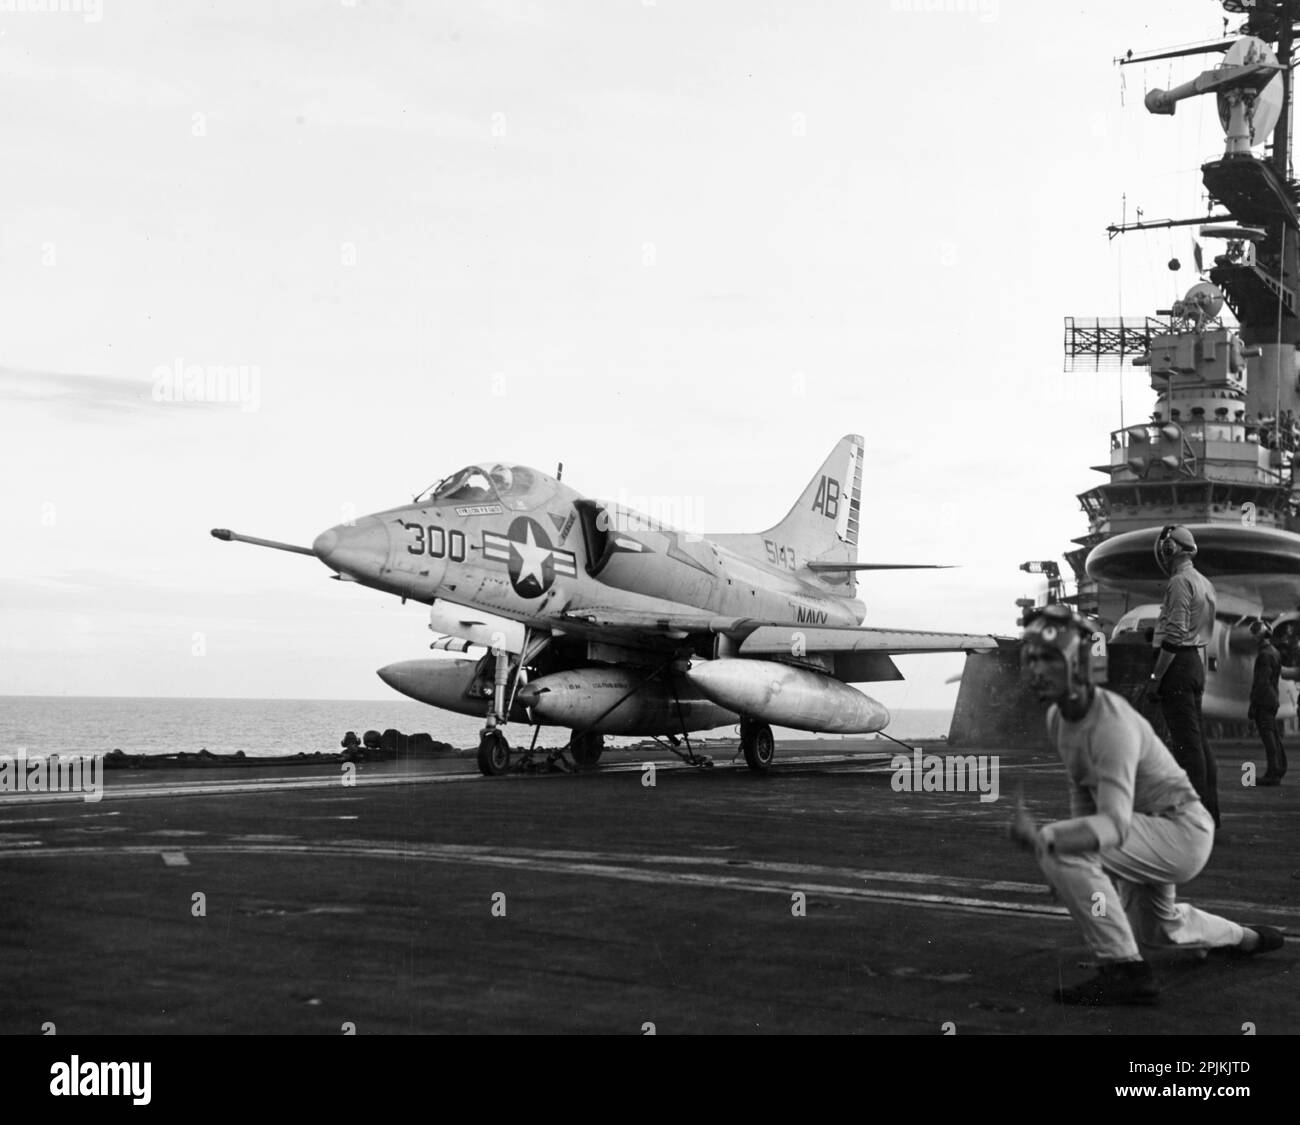 EIN US-AMERIKANISCHER Navy Douglas A-4C Skyhawk (BuNo. 145143) von Angriffsschwadron 172 (VA-172) „Blue Bolts“ bereitet sich auf das Verlassen des Cockpits des Flugzeugträgers USS Franklin D. Roosevelt (CVA-42) vom 10. August 1966 vor. VA-172 wurde Attack Carrier Air Wing 1 (CVW-1) an Bord der Franklin D. Roosevelt für einen Einsatz nach Vietnam vom 21. Juni 1966 bis zum 21. Februar 1967 zugeteilt. Dieses Flugzeug ging am 2. Dezember 1966 verloren, als es von einer nordvietnamesischen SA-2-Rakete während einer nächtlichen Aufklärungsmission über dem Red River Delta, südlich von Hanoi, Vietnam, abgeschossen wurde. Der Pilot, Commander Bruce A. Nystrom, Wachmann VA-172 Stockfoto